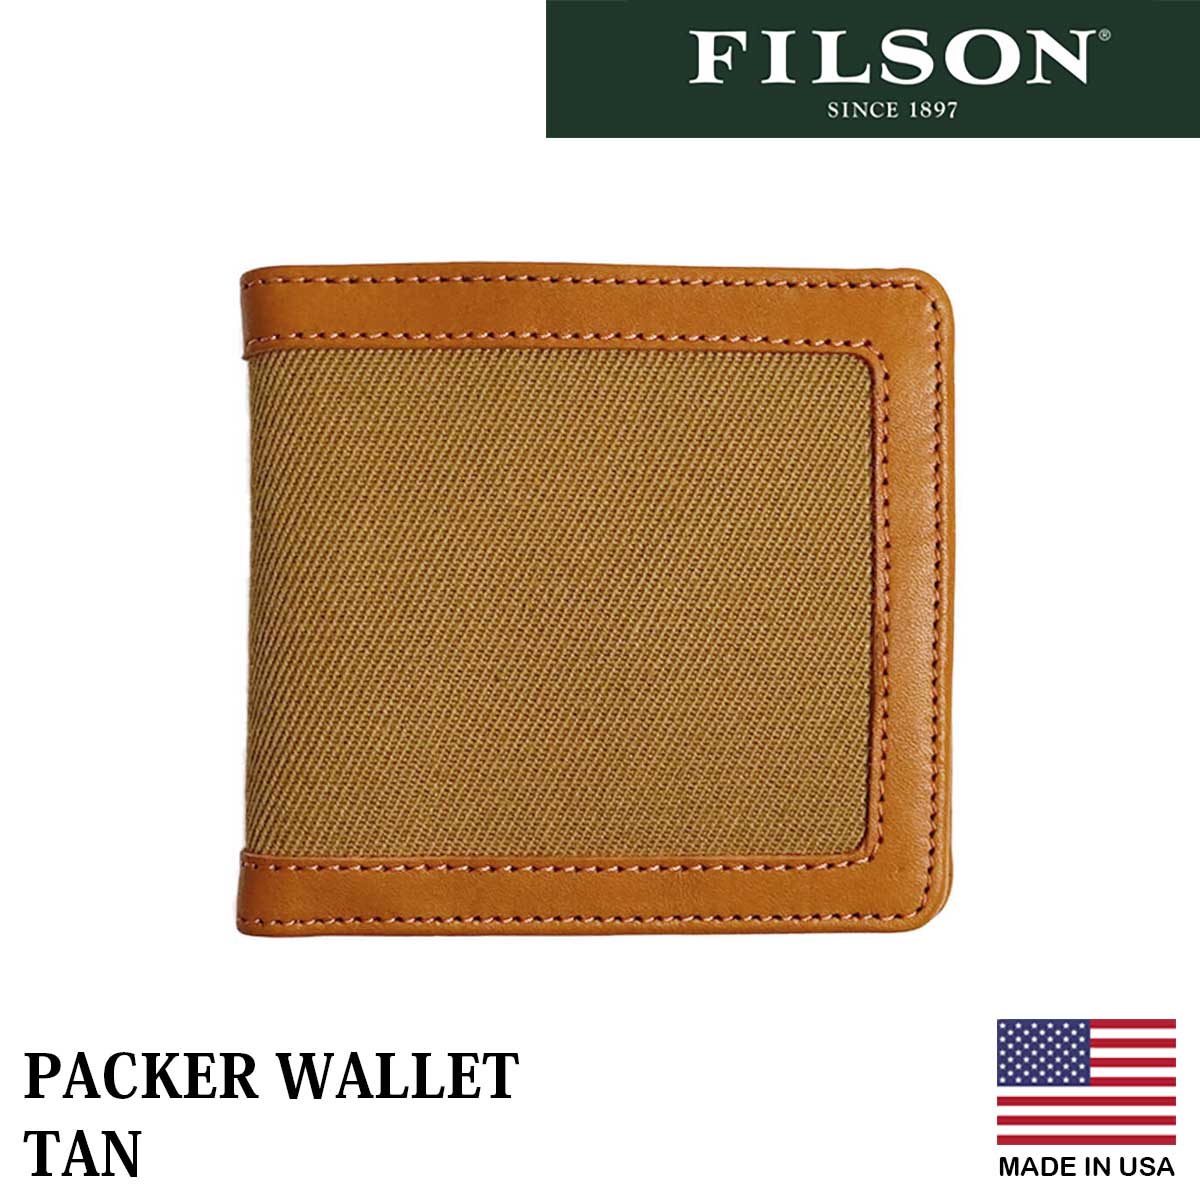 フィルソン FILSON パッカーウォレット 20187880 メンズ 財布 二つ折り レザー ツイル アメリカ製 米国製